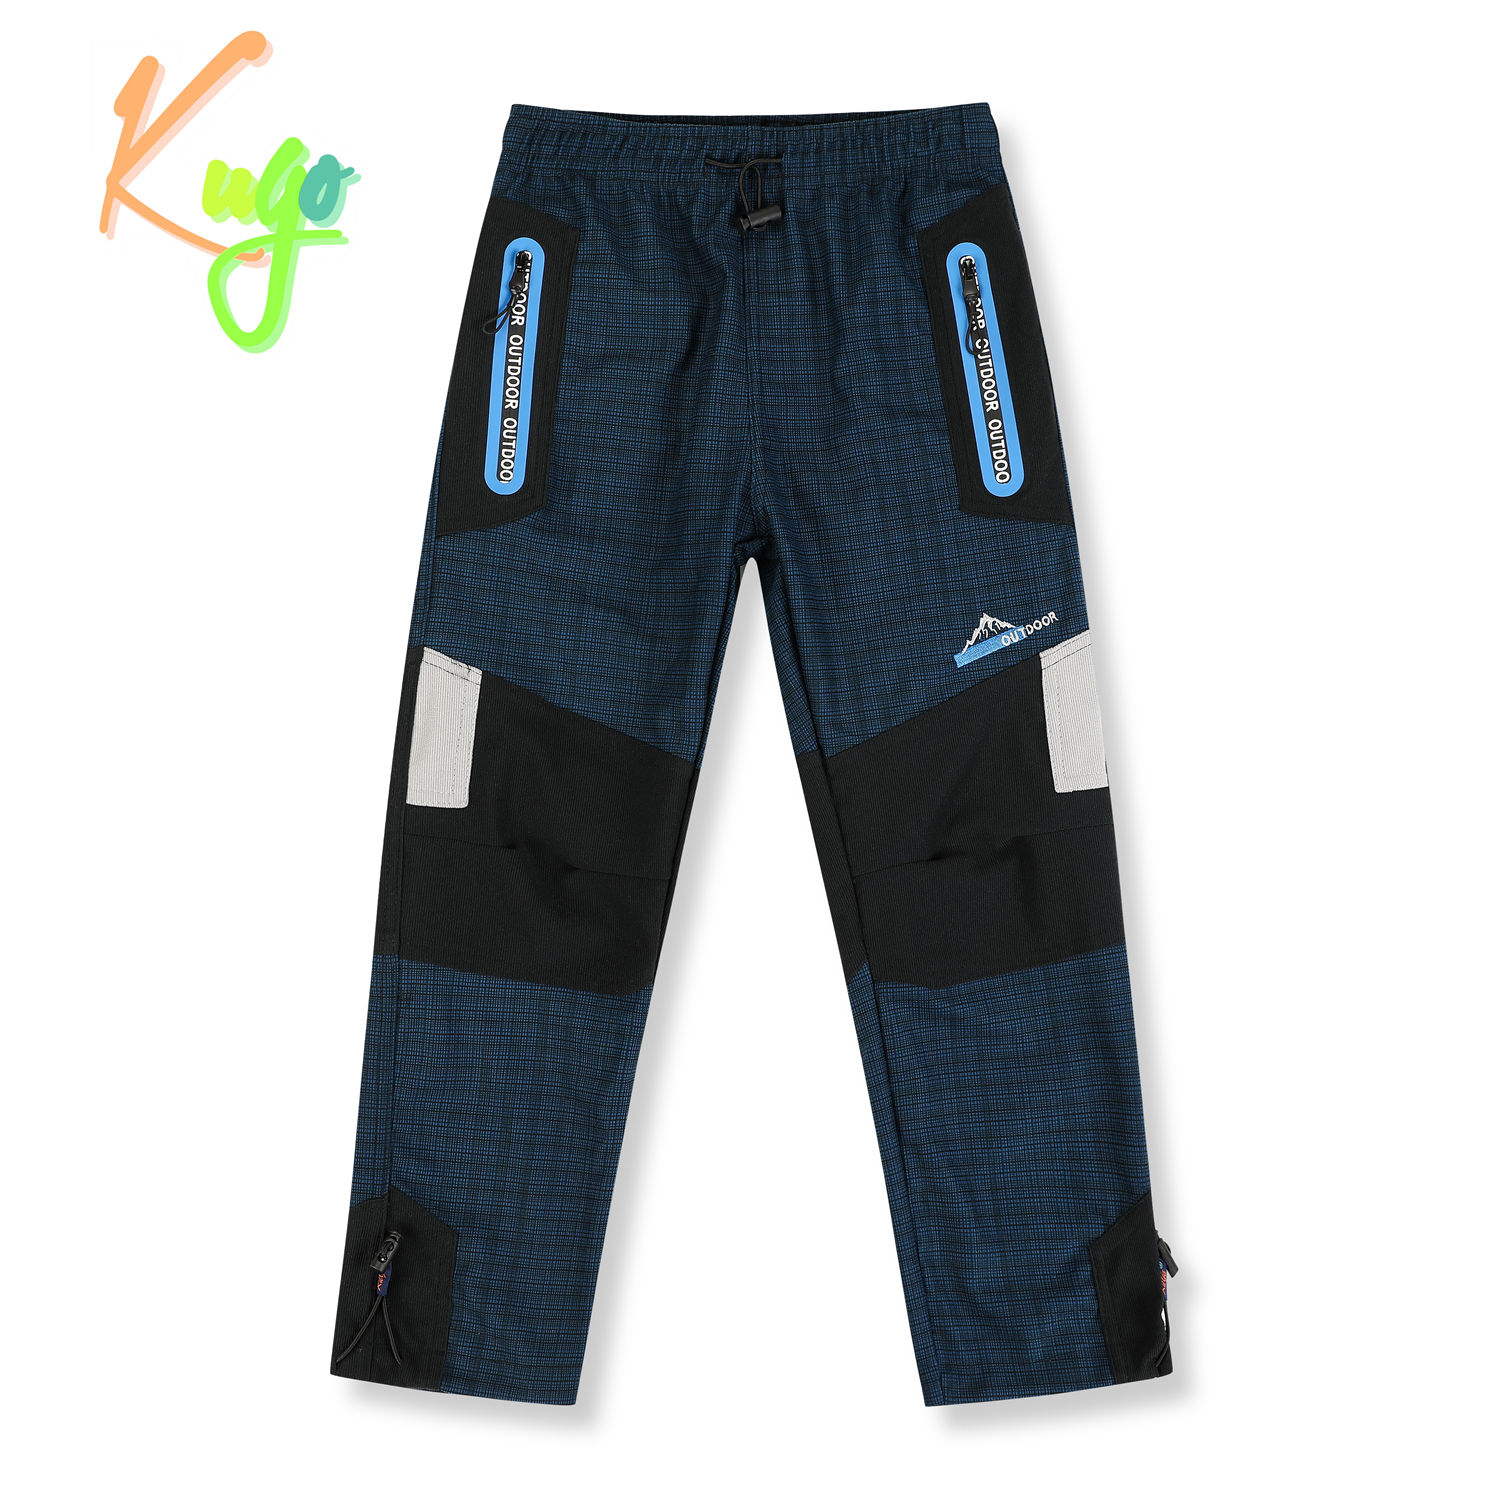 Chlapecké outdoorové kalhoty - KUGO G9781, modrá Barva: Modrá, Velikost: 104